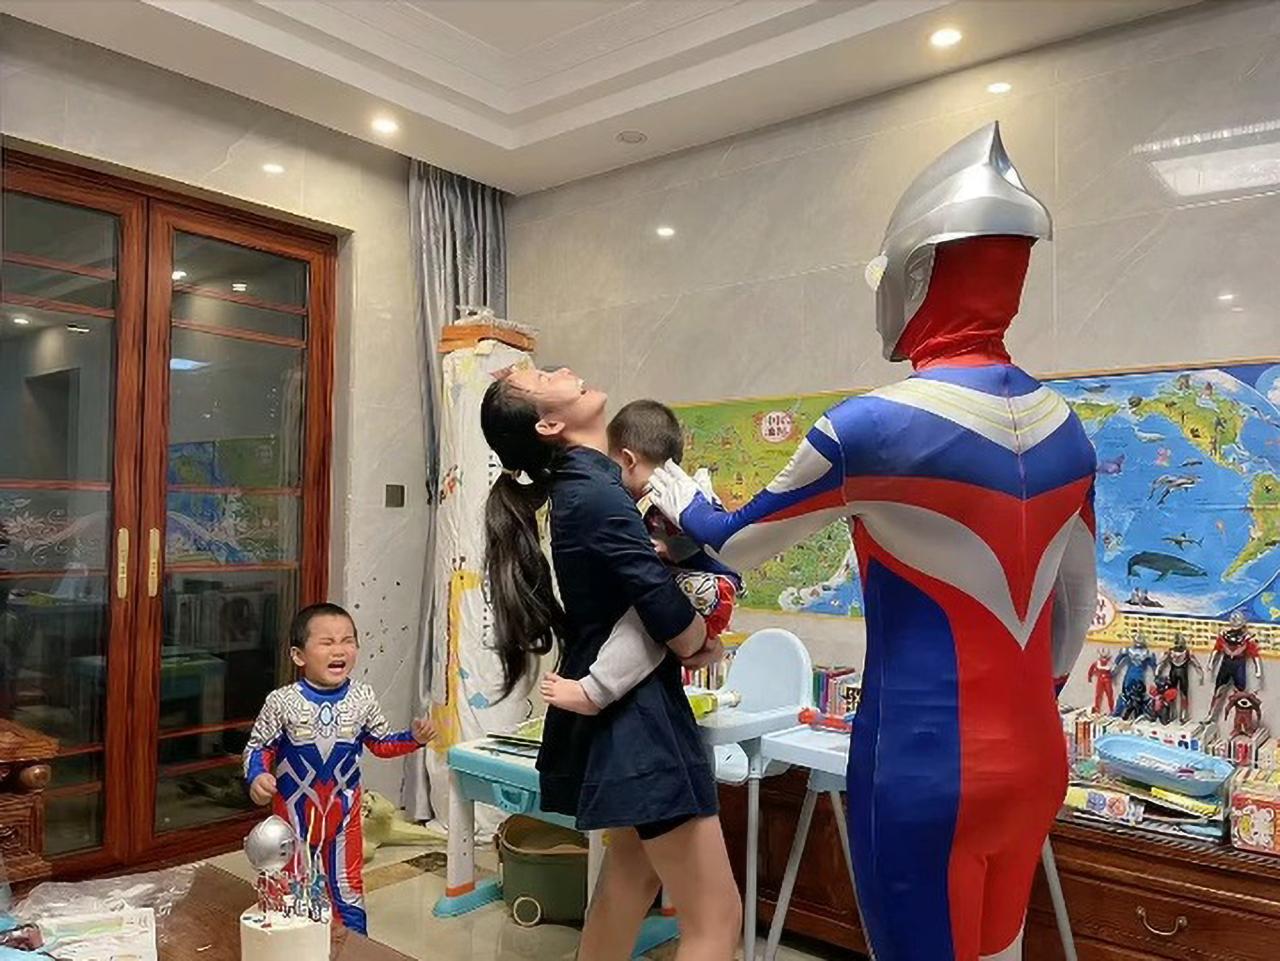 Ambos hijos comenzaron a llorar cuando ingresó al superhéroe Ultraman.